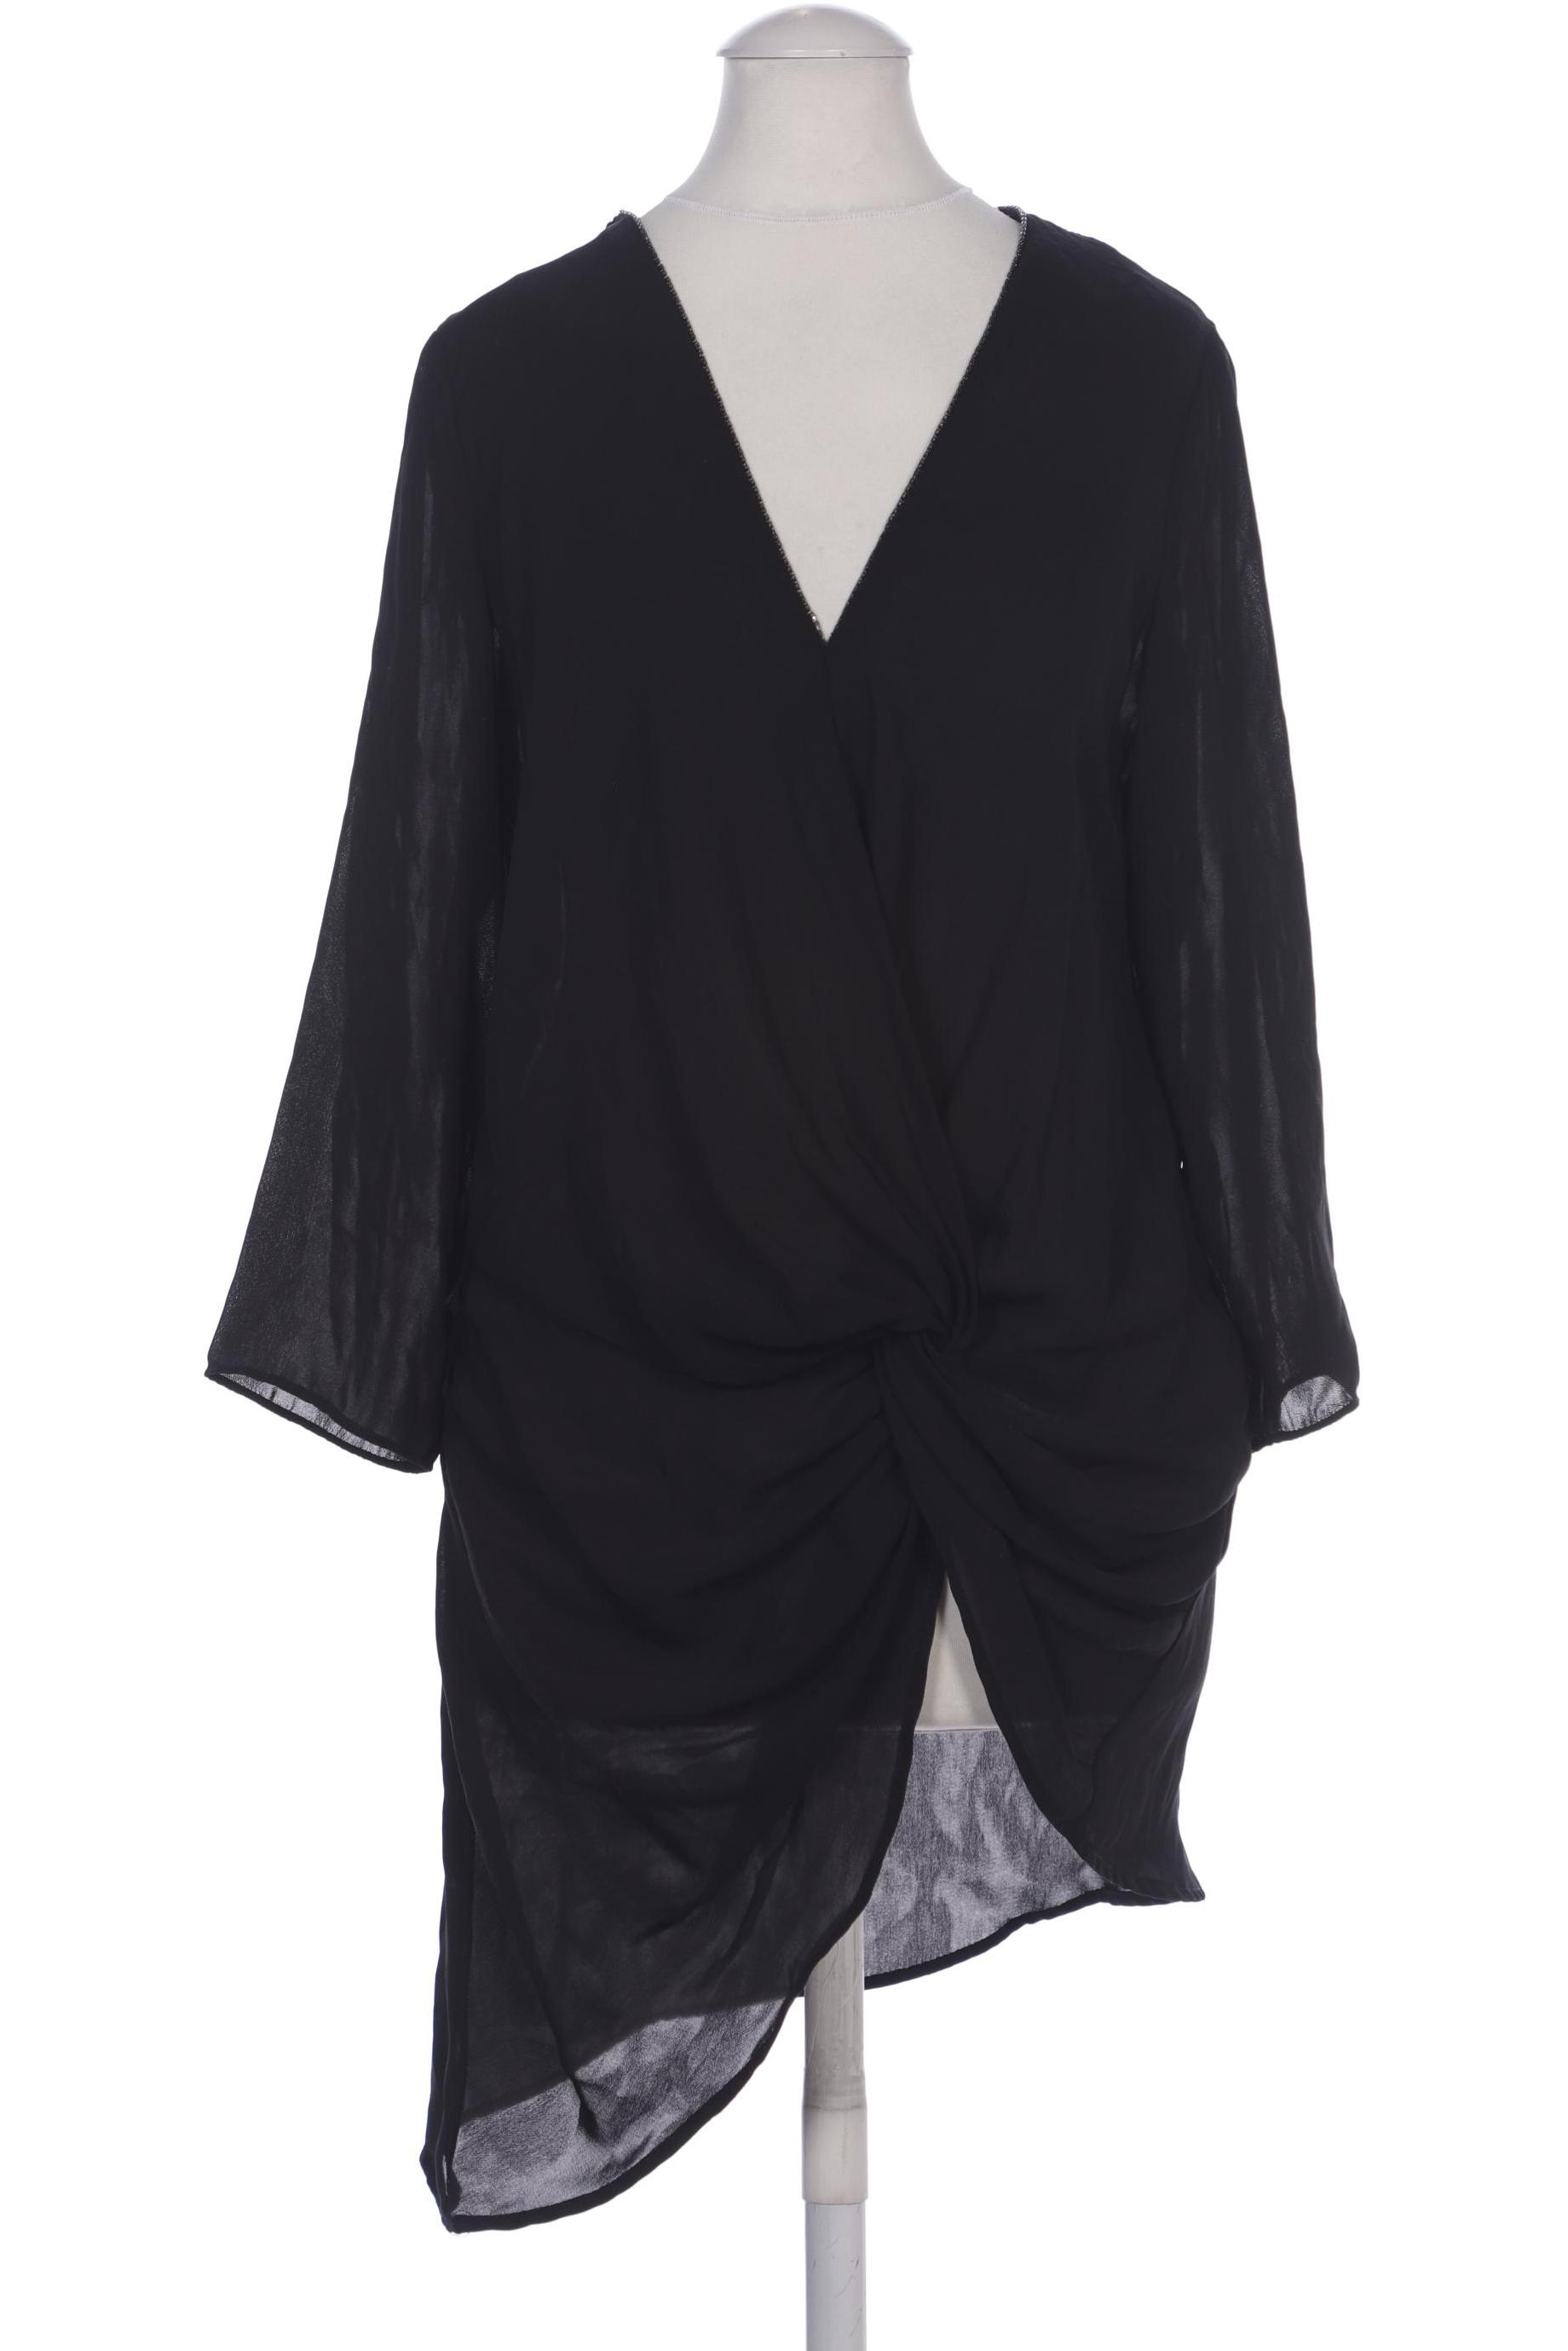 Zara Damen Bluse, schwarz, Gr. 34 von ZARA